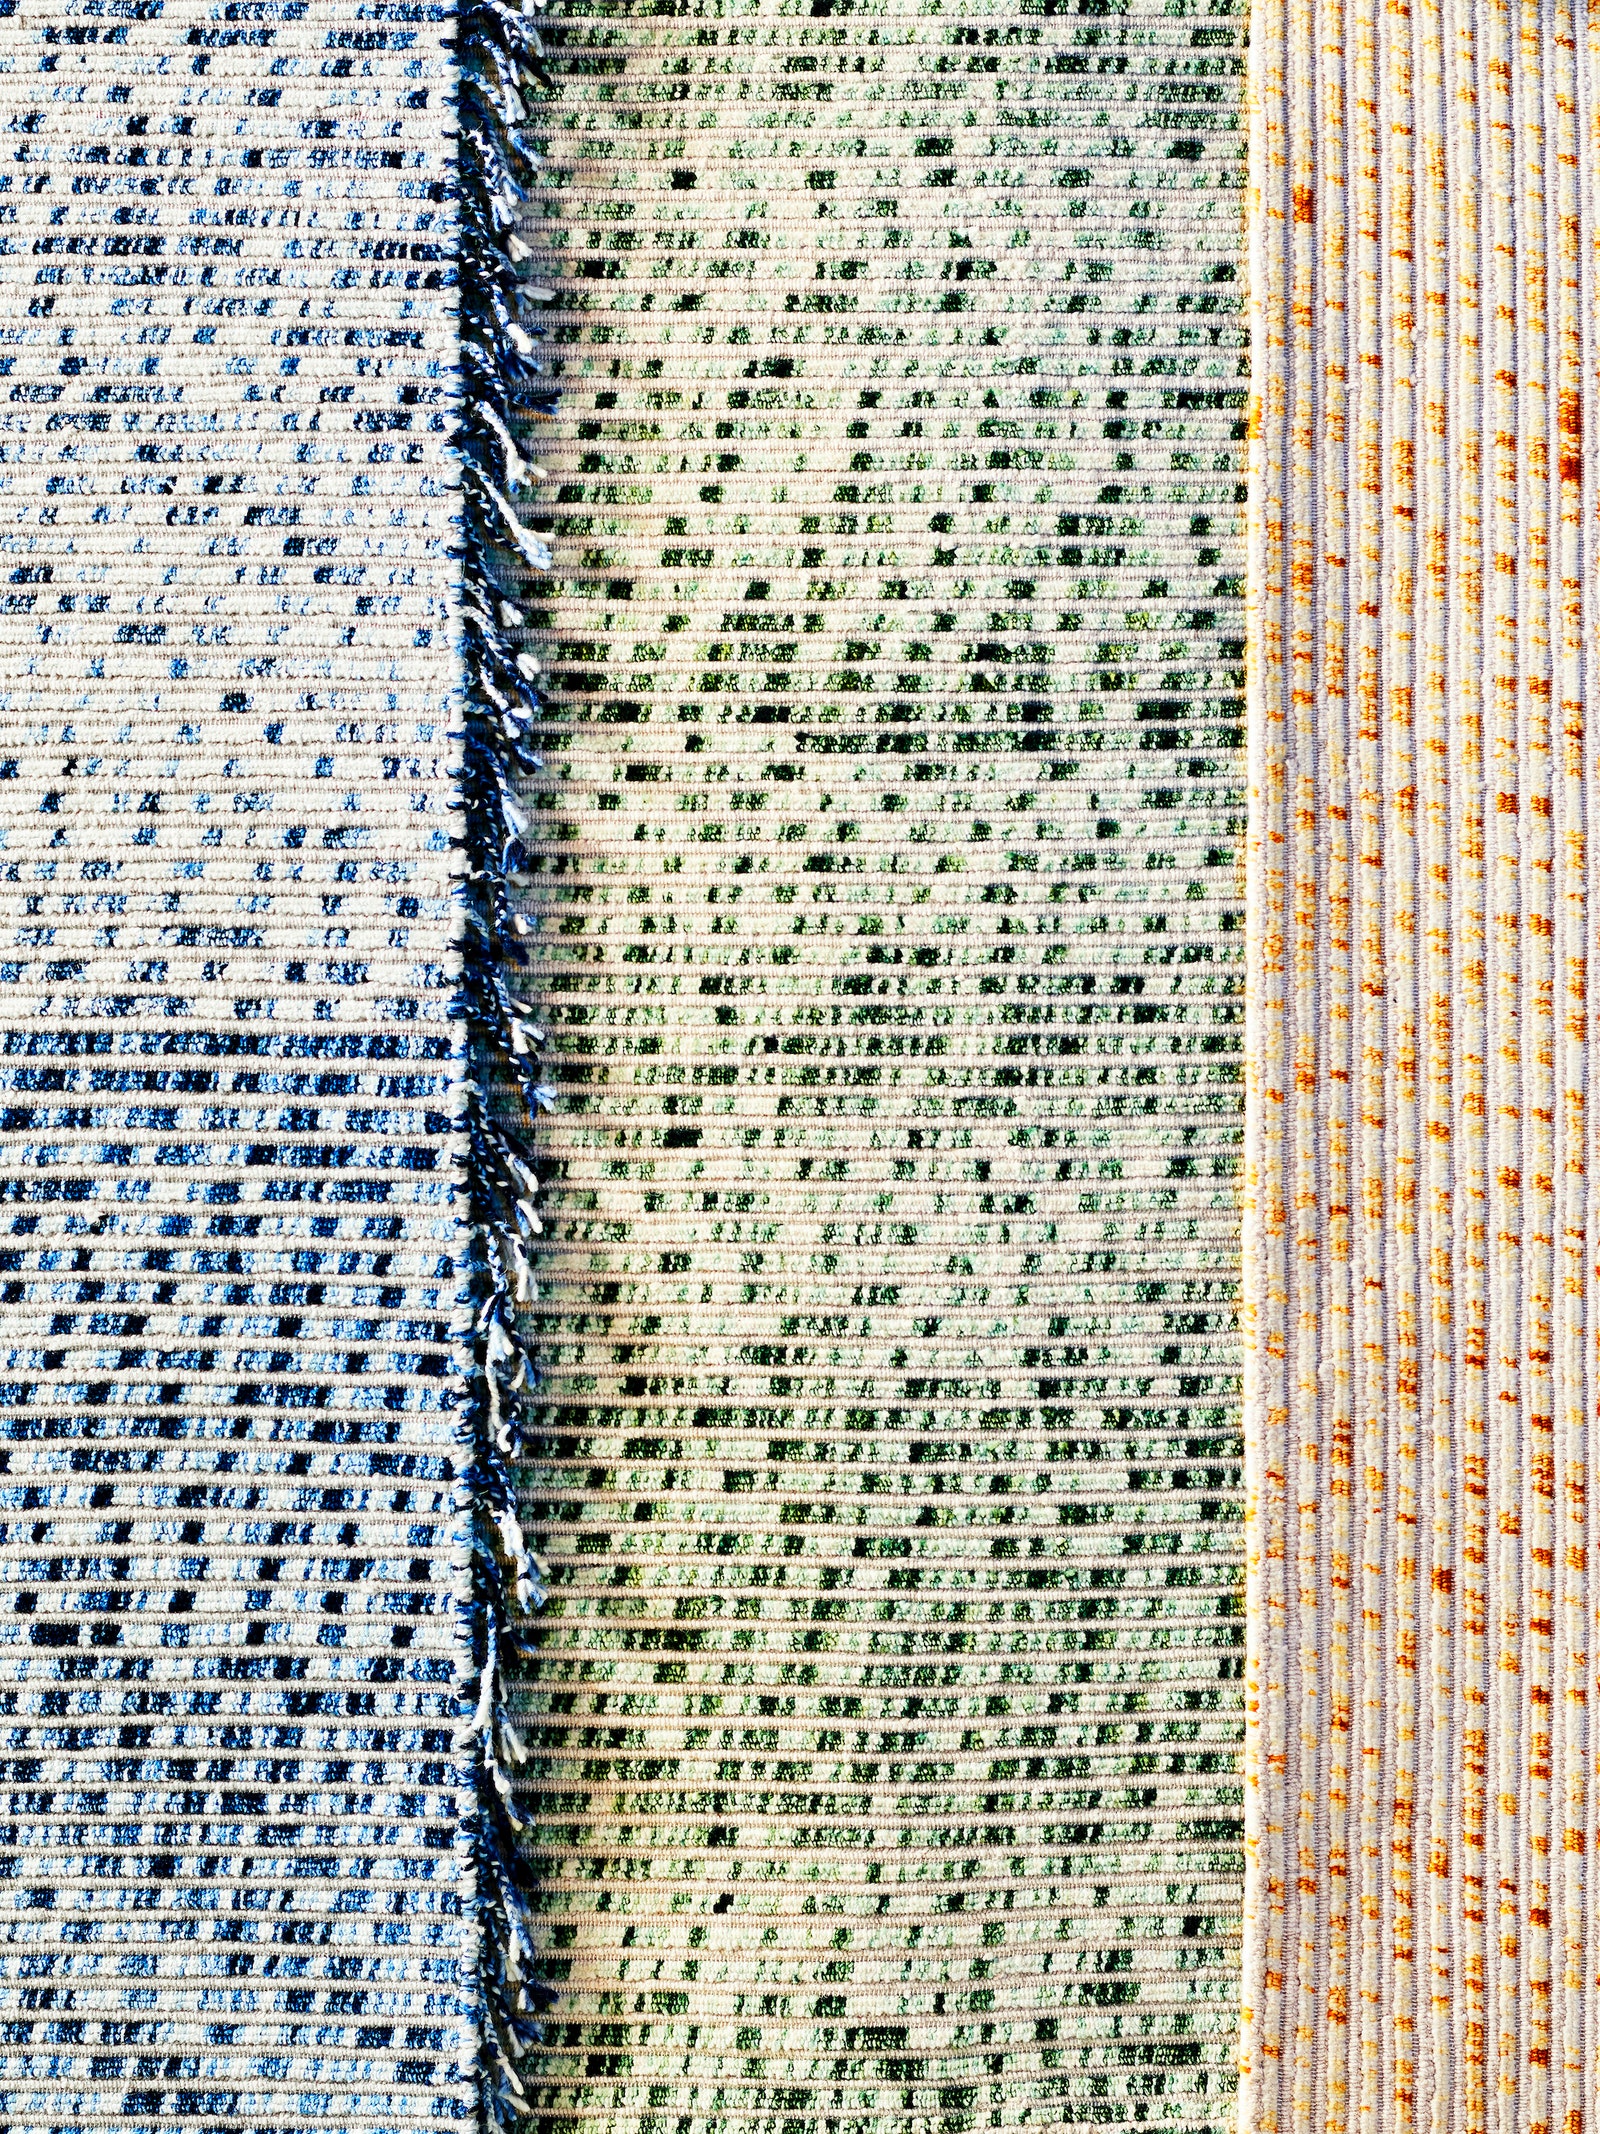 ADLovesSalone абстрактные ковры по дизайну Филиппа Малуэна для cctapis